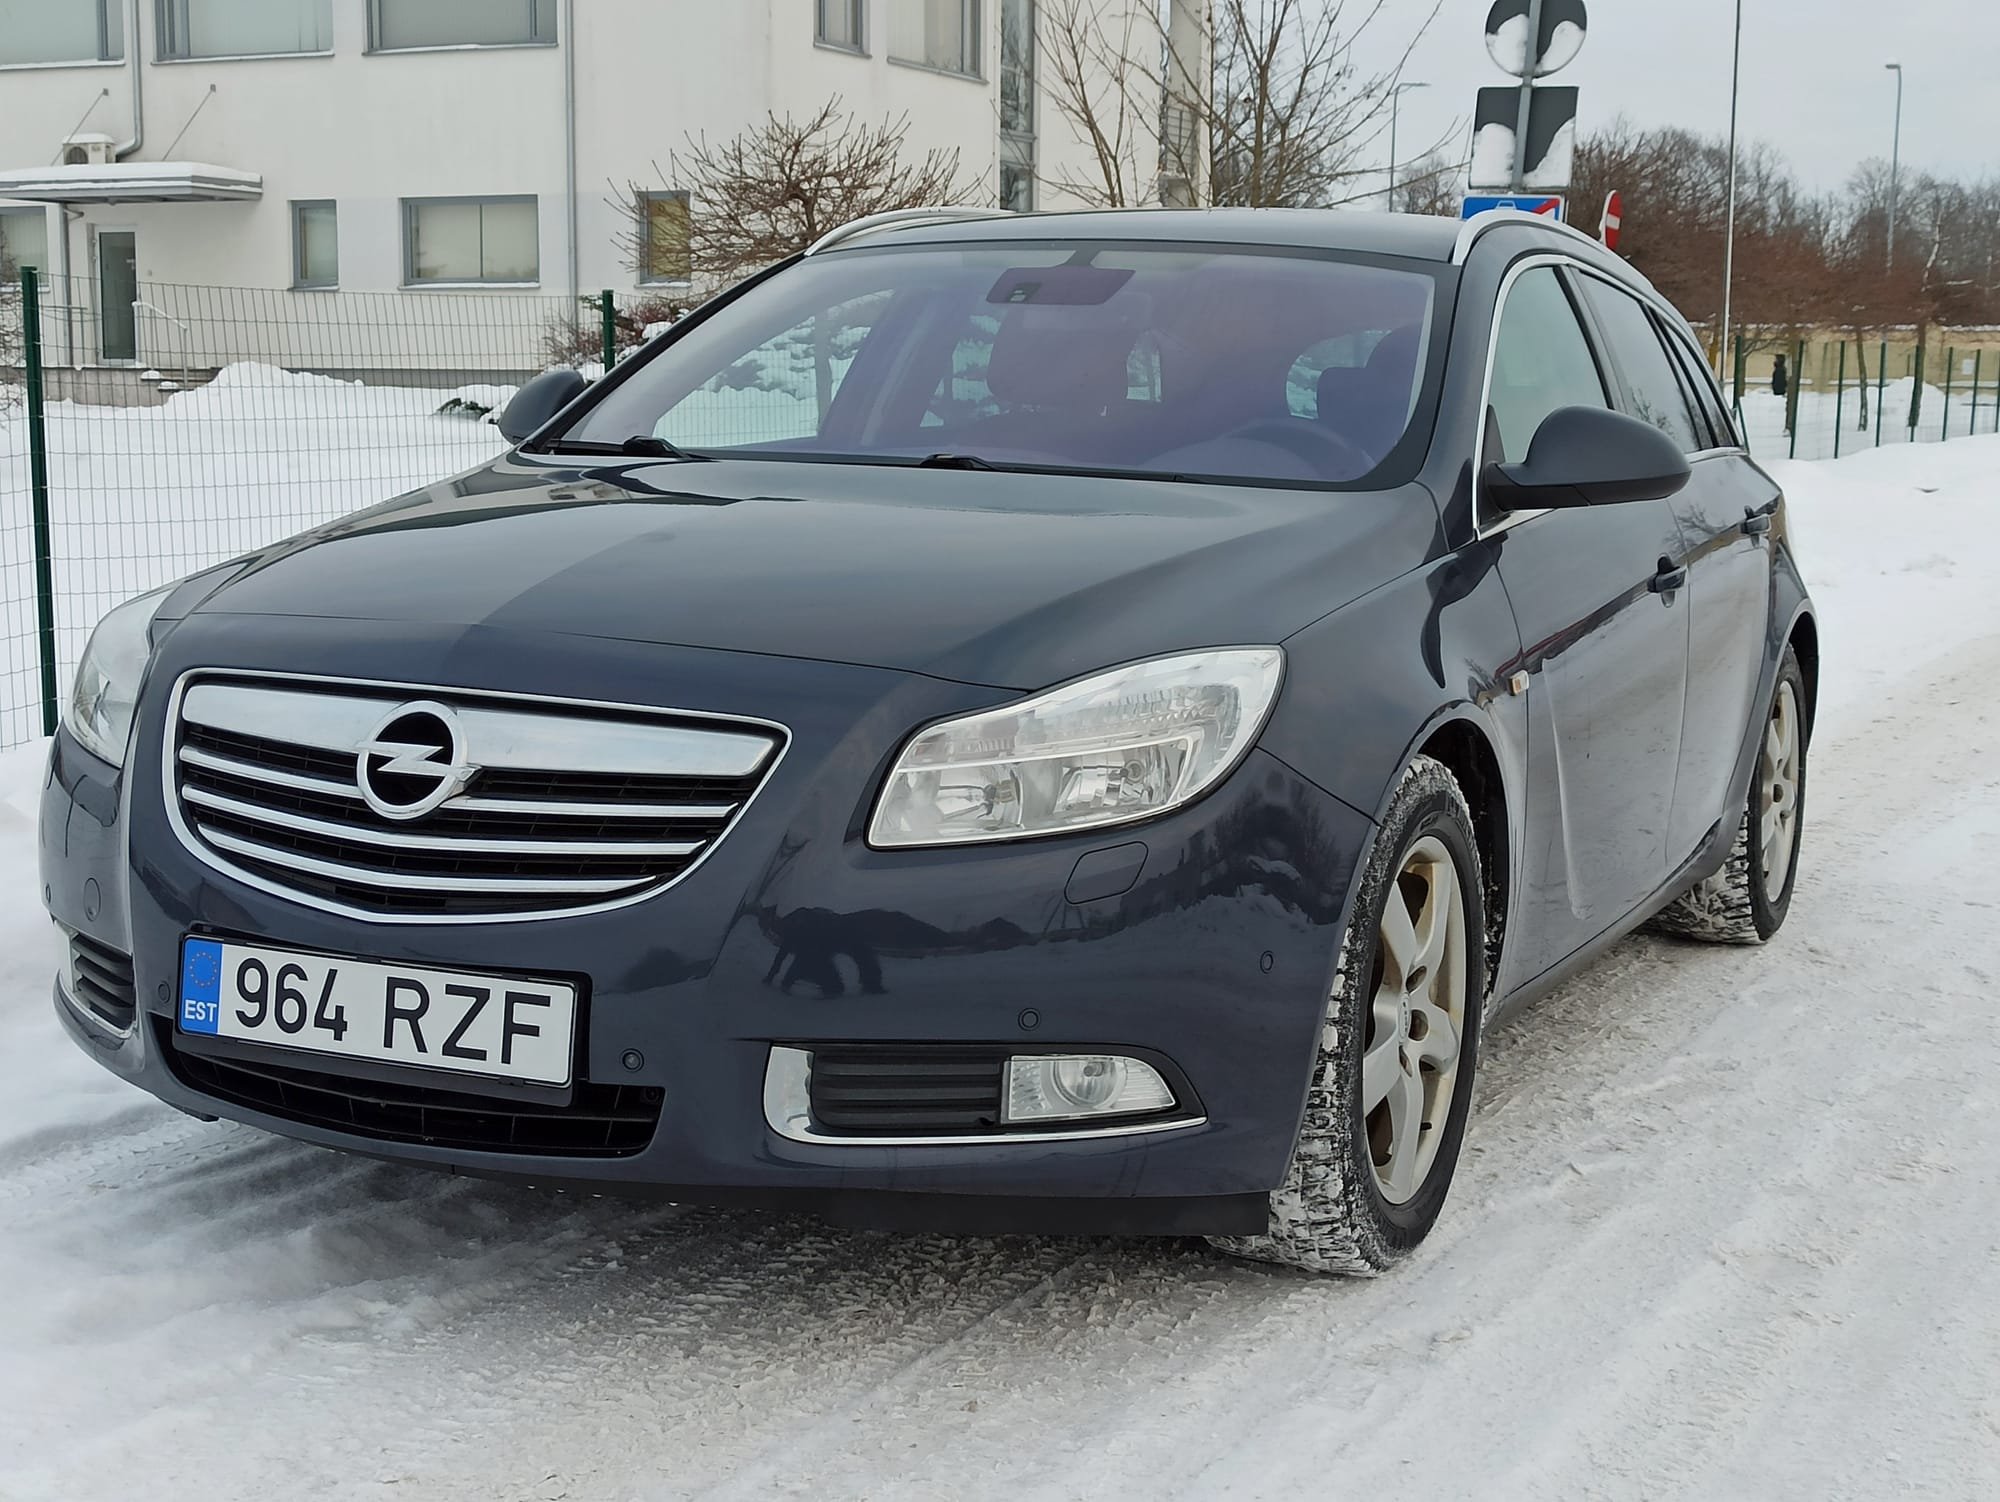 MÜÜDUD Opel Insignia (VIDEO proovisõidust ja ostueelsest kontrollist)